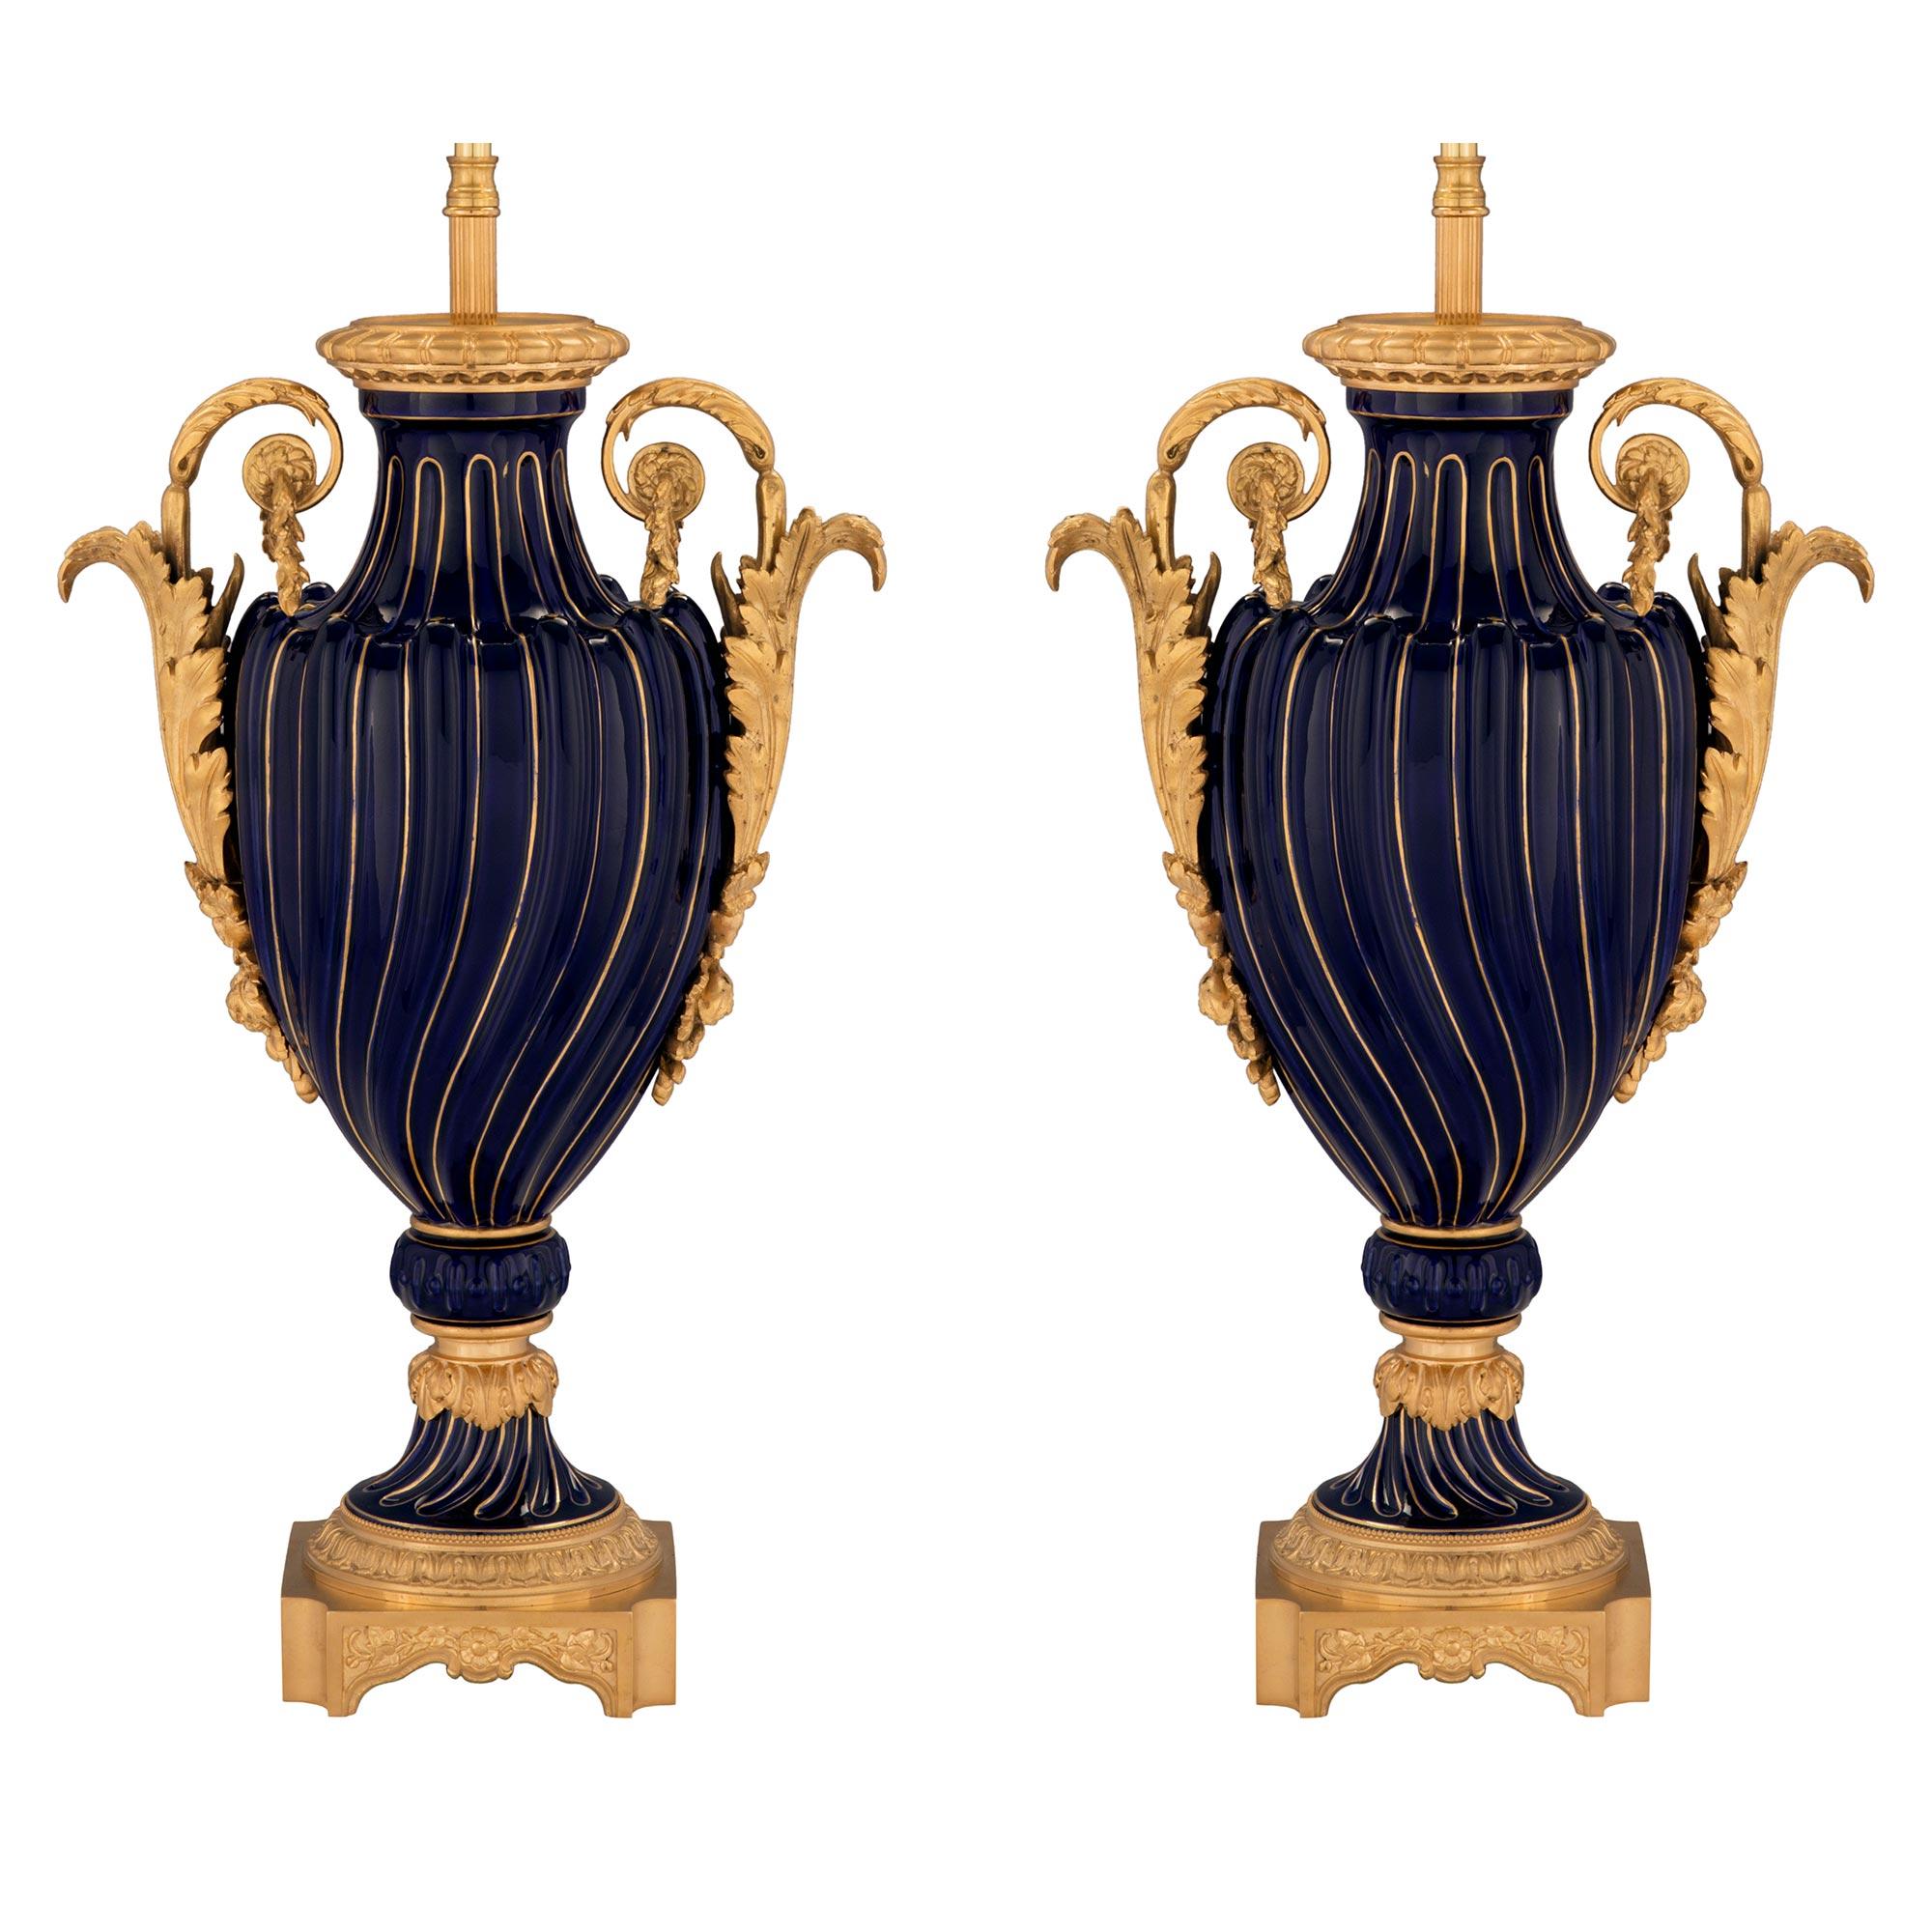 Ein elegantes und hochwertiges Paar französischer kobaltblauer Sèvres-Porzellan- und Ormolu-Lampen aus dem 19. Jahrhundert. Jede Lampe steht auf einem feinen quadratischen Ormolu-Sockel mit konkaven Ecken und reizvollen Blattwerken unter einem